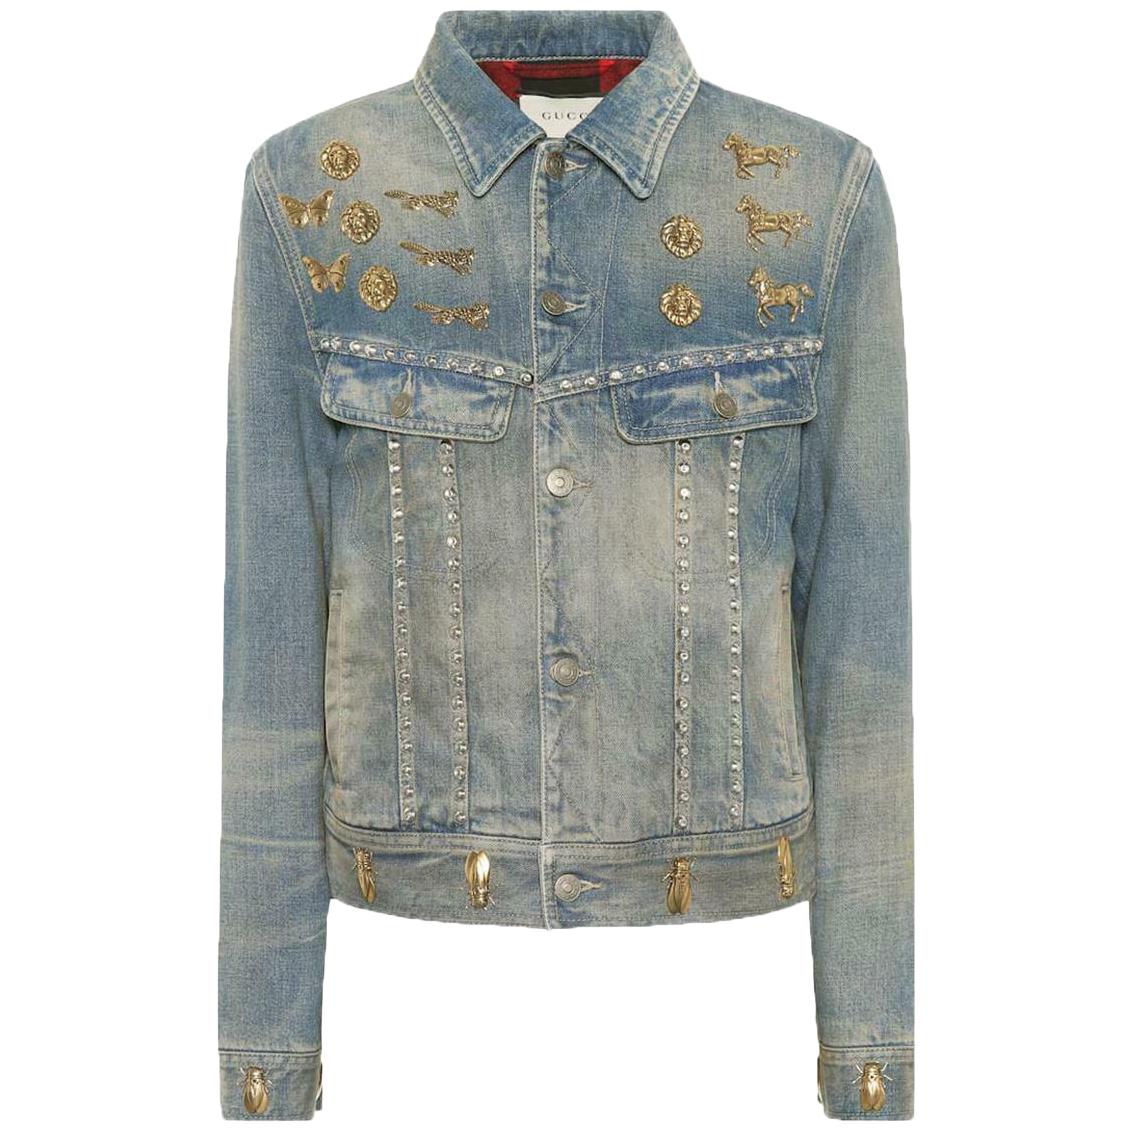 Gucci Embellished Denim Jacket 